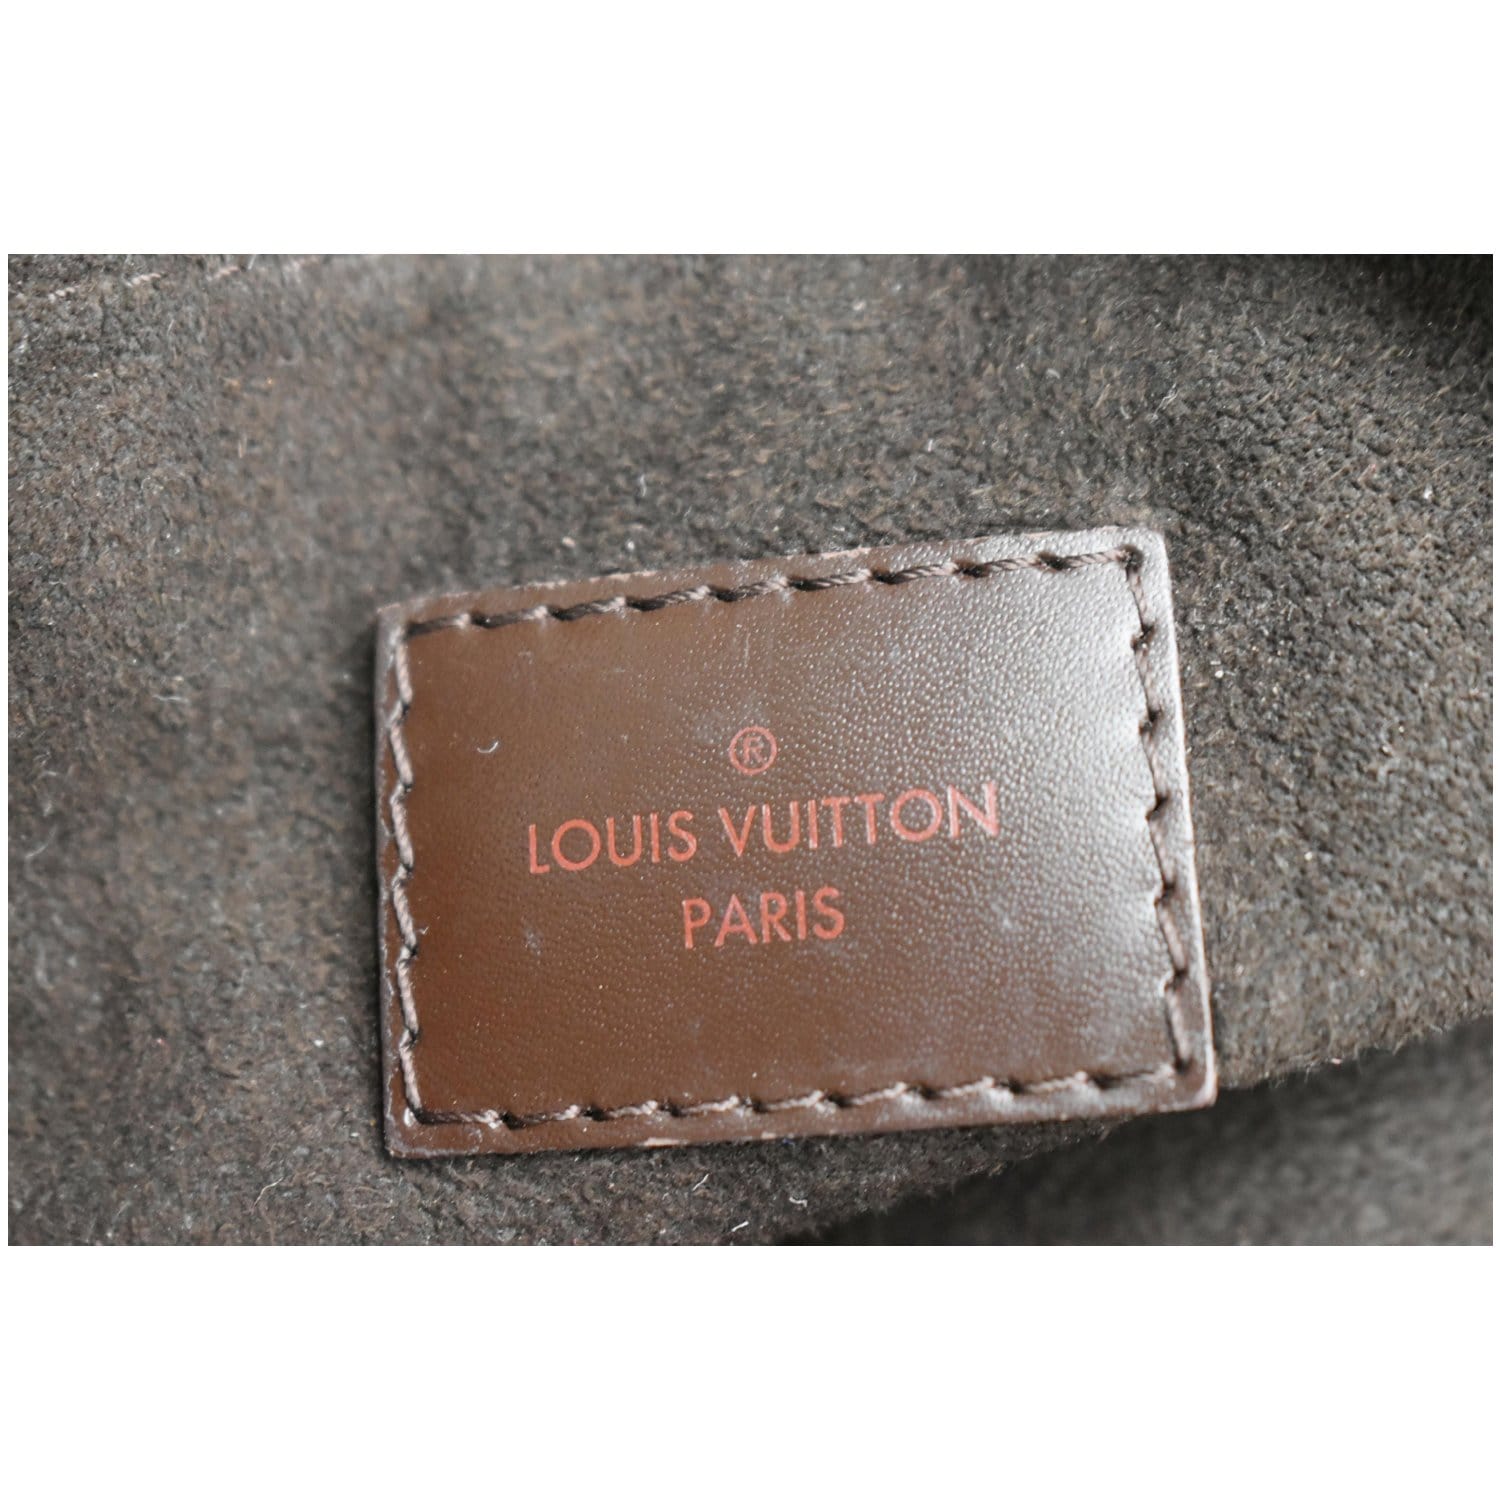 Louis Vuitton Portobello Bag, Bragmybag